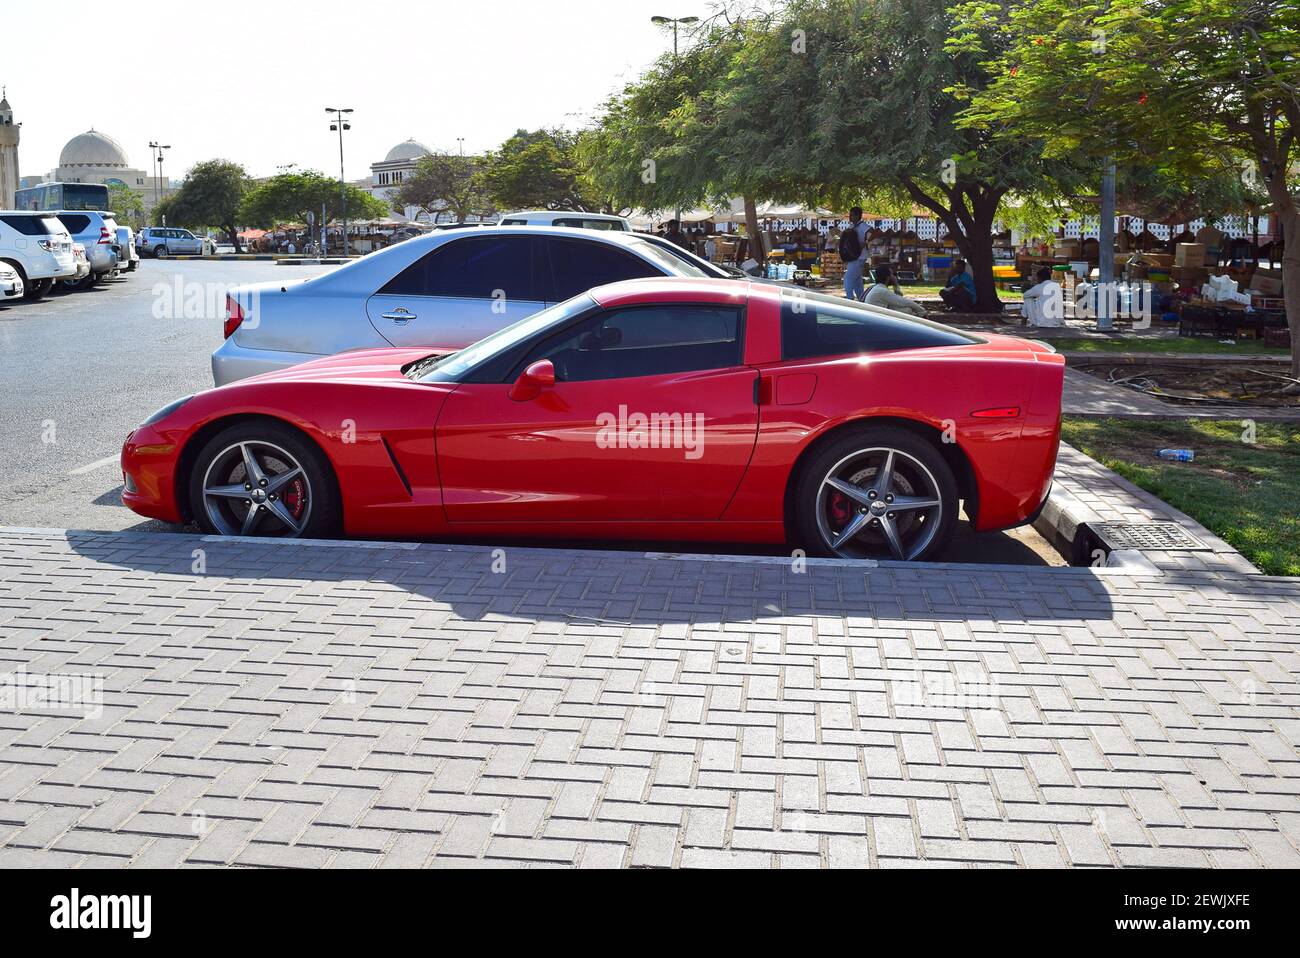 Vista laterale di una Corvette Chevrolet rossa. Dettagli esterni dell'auto Foto Stock